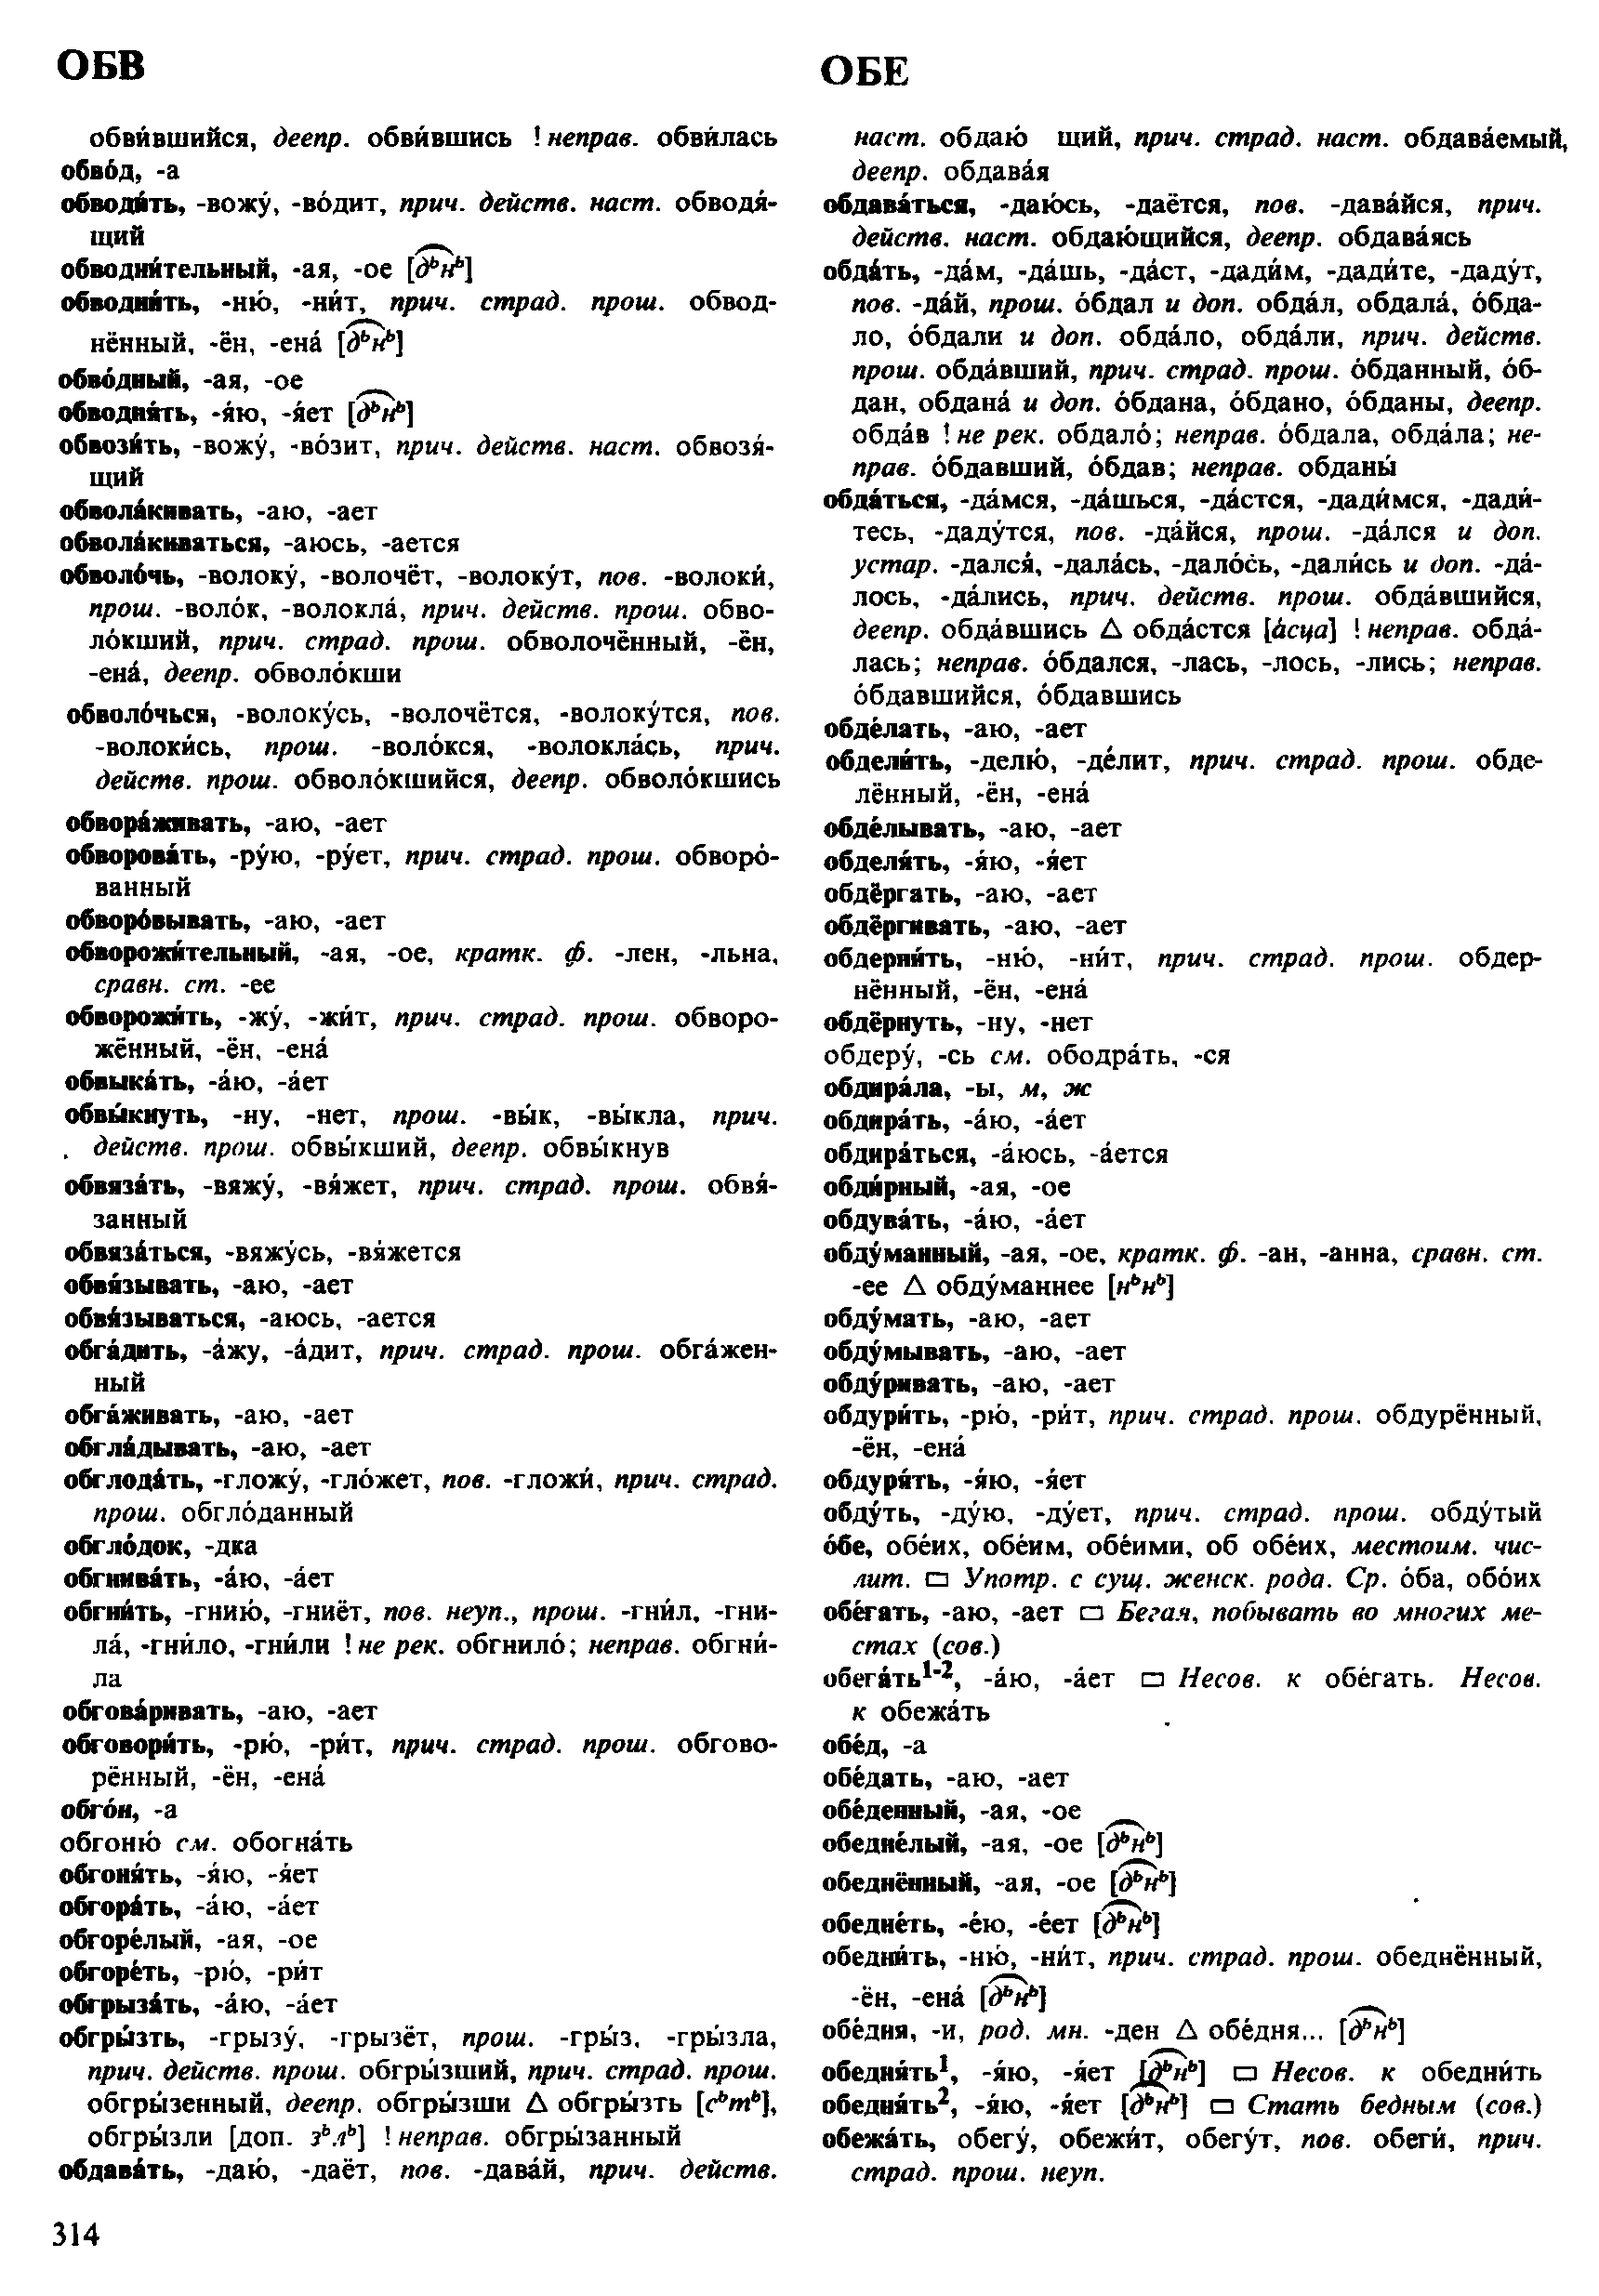 Фотокопия pdf / скан страницы 314 орфоэпического словаря под редакцией Аванесова (4 издание, 1988 год)